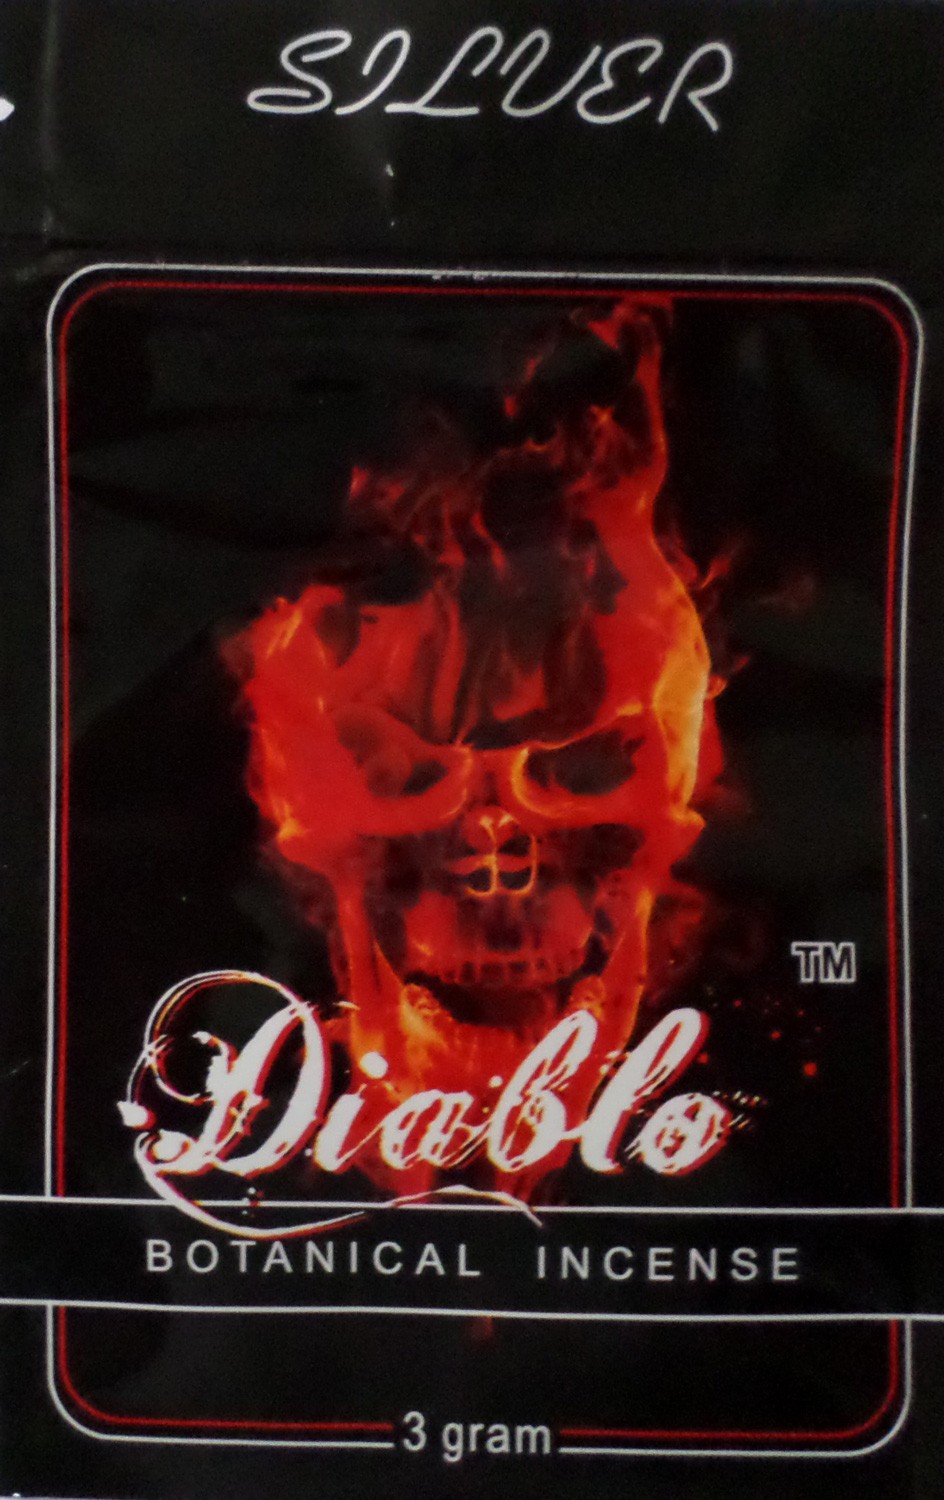 Diablo Silver edition 3g